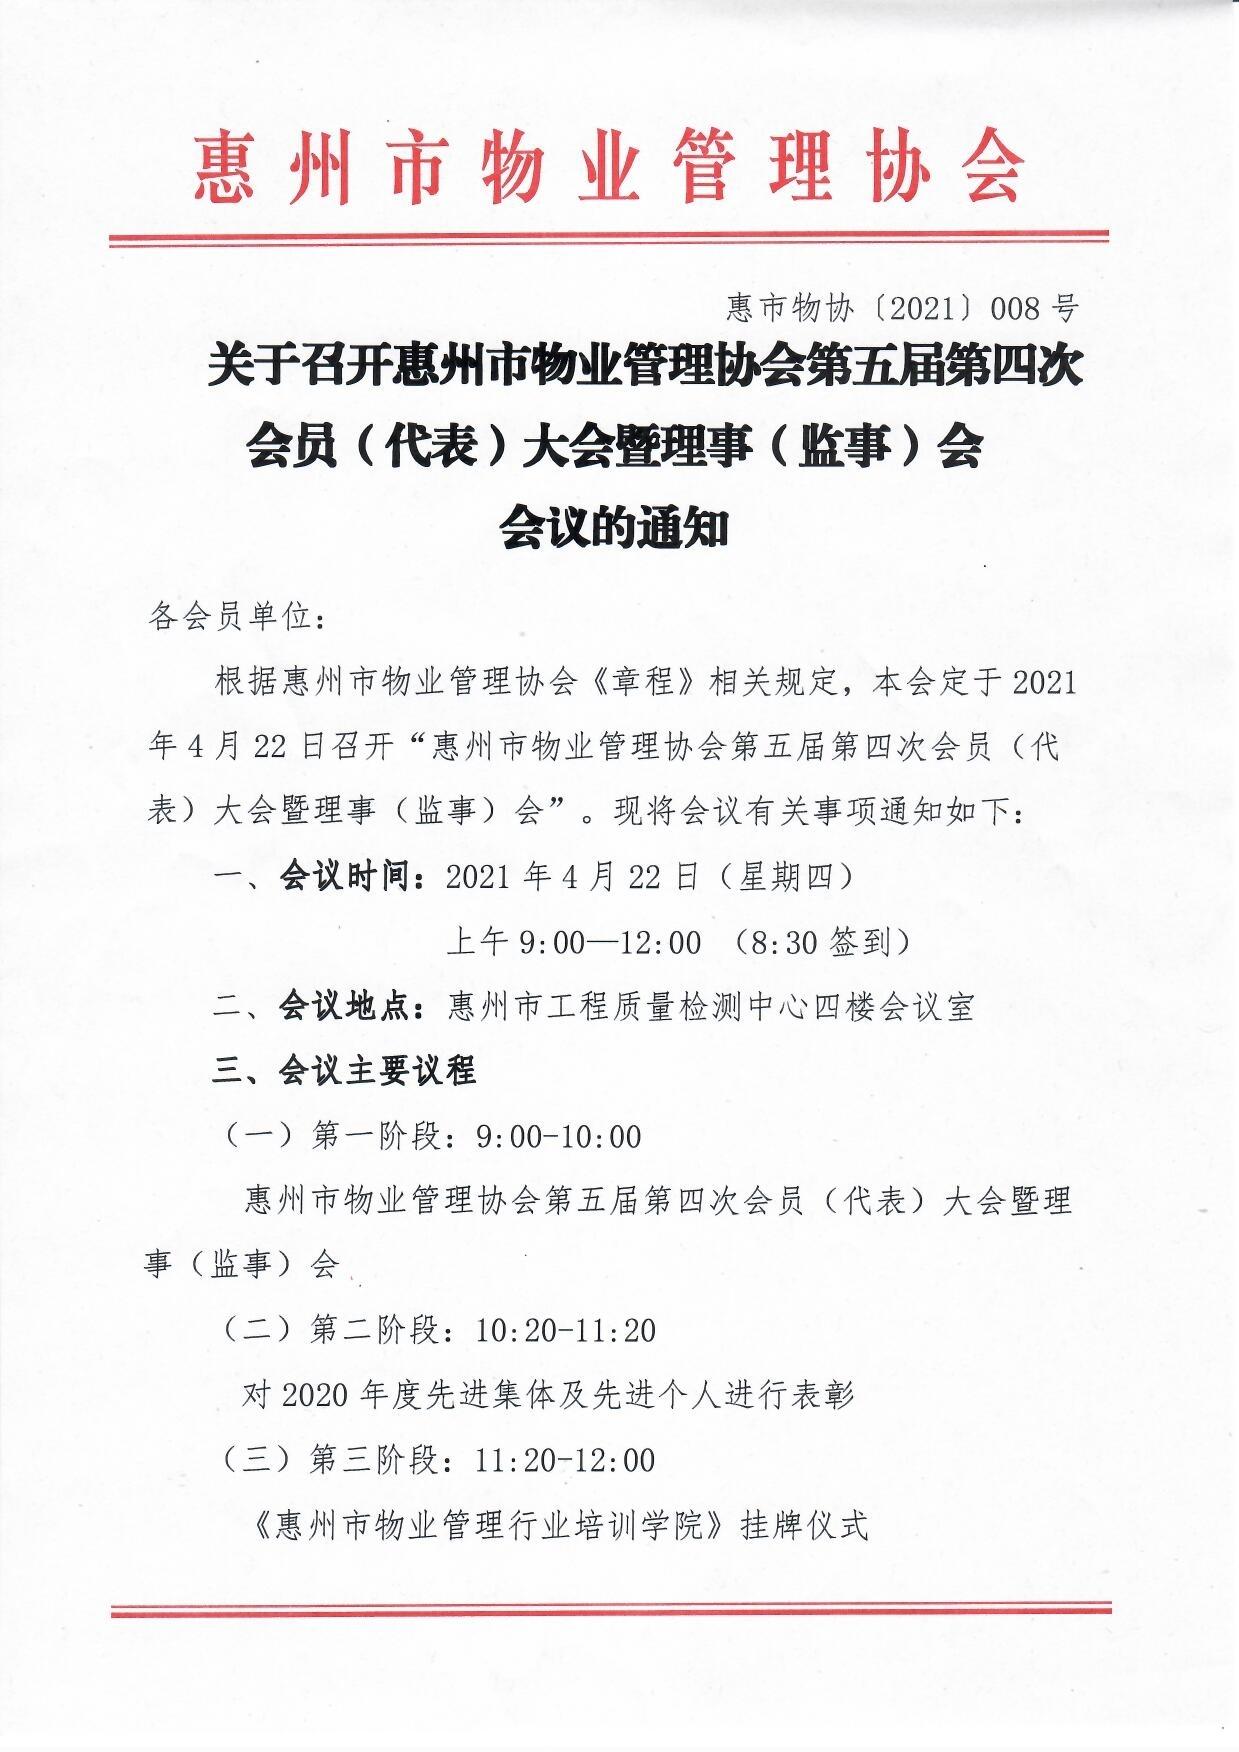 关于召开惠州市物业管理协会第五届第四次会员（代表）大会暨理事（监事）会会议的通知1.jpg